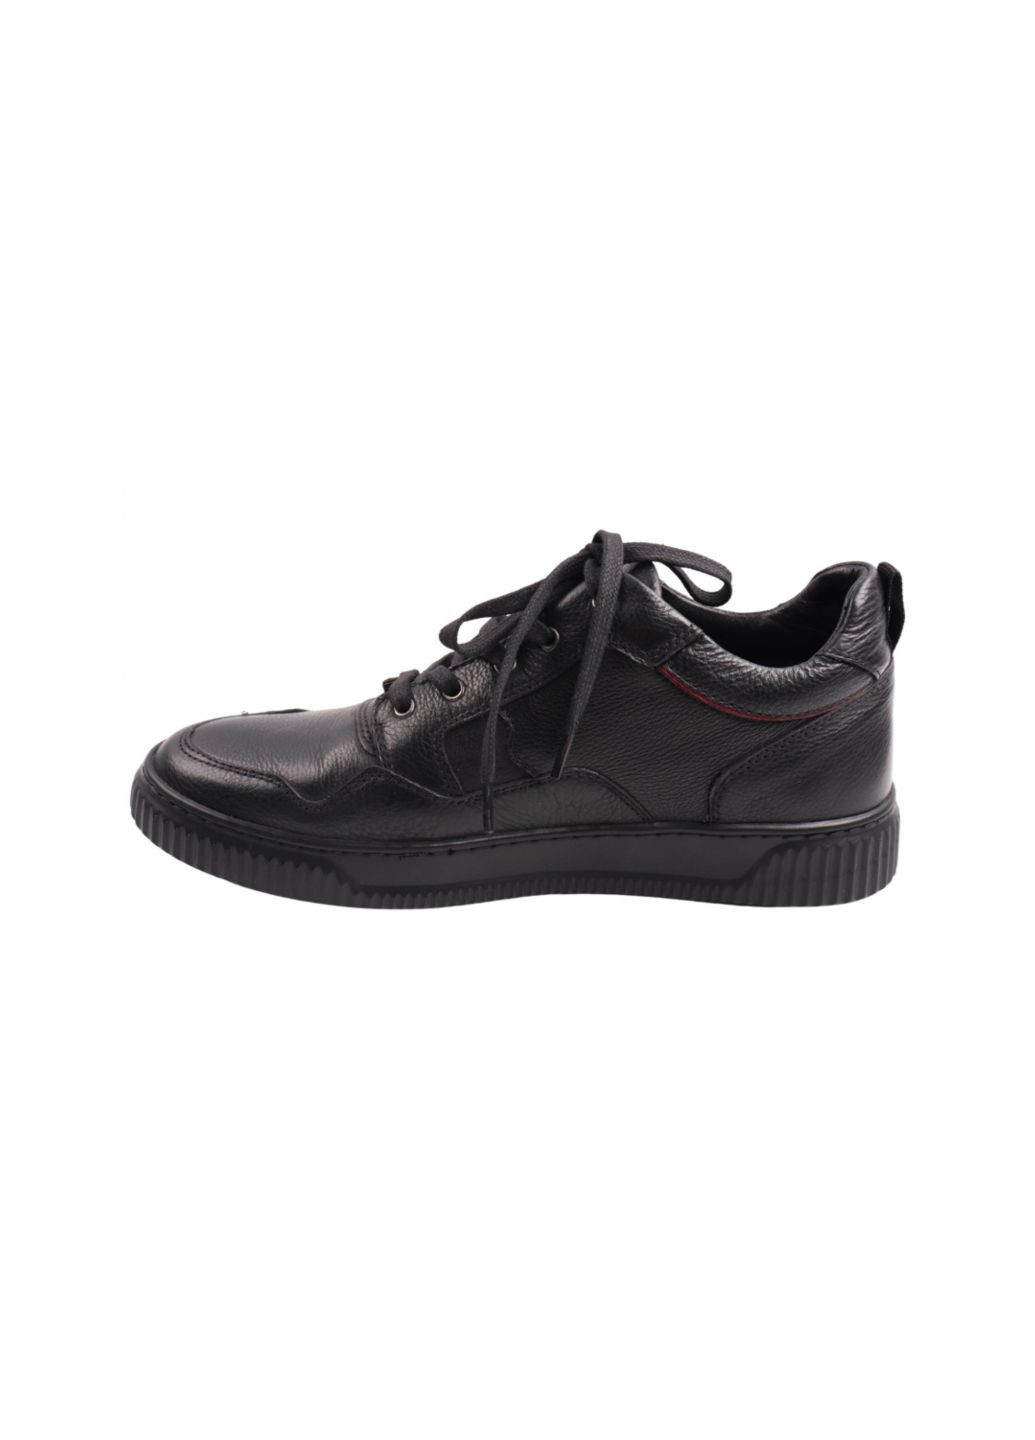 Черные ботинки мужские черные натуральная кожа Detta